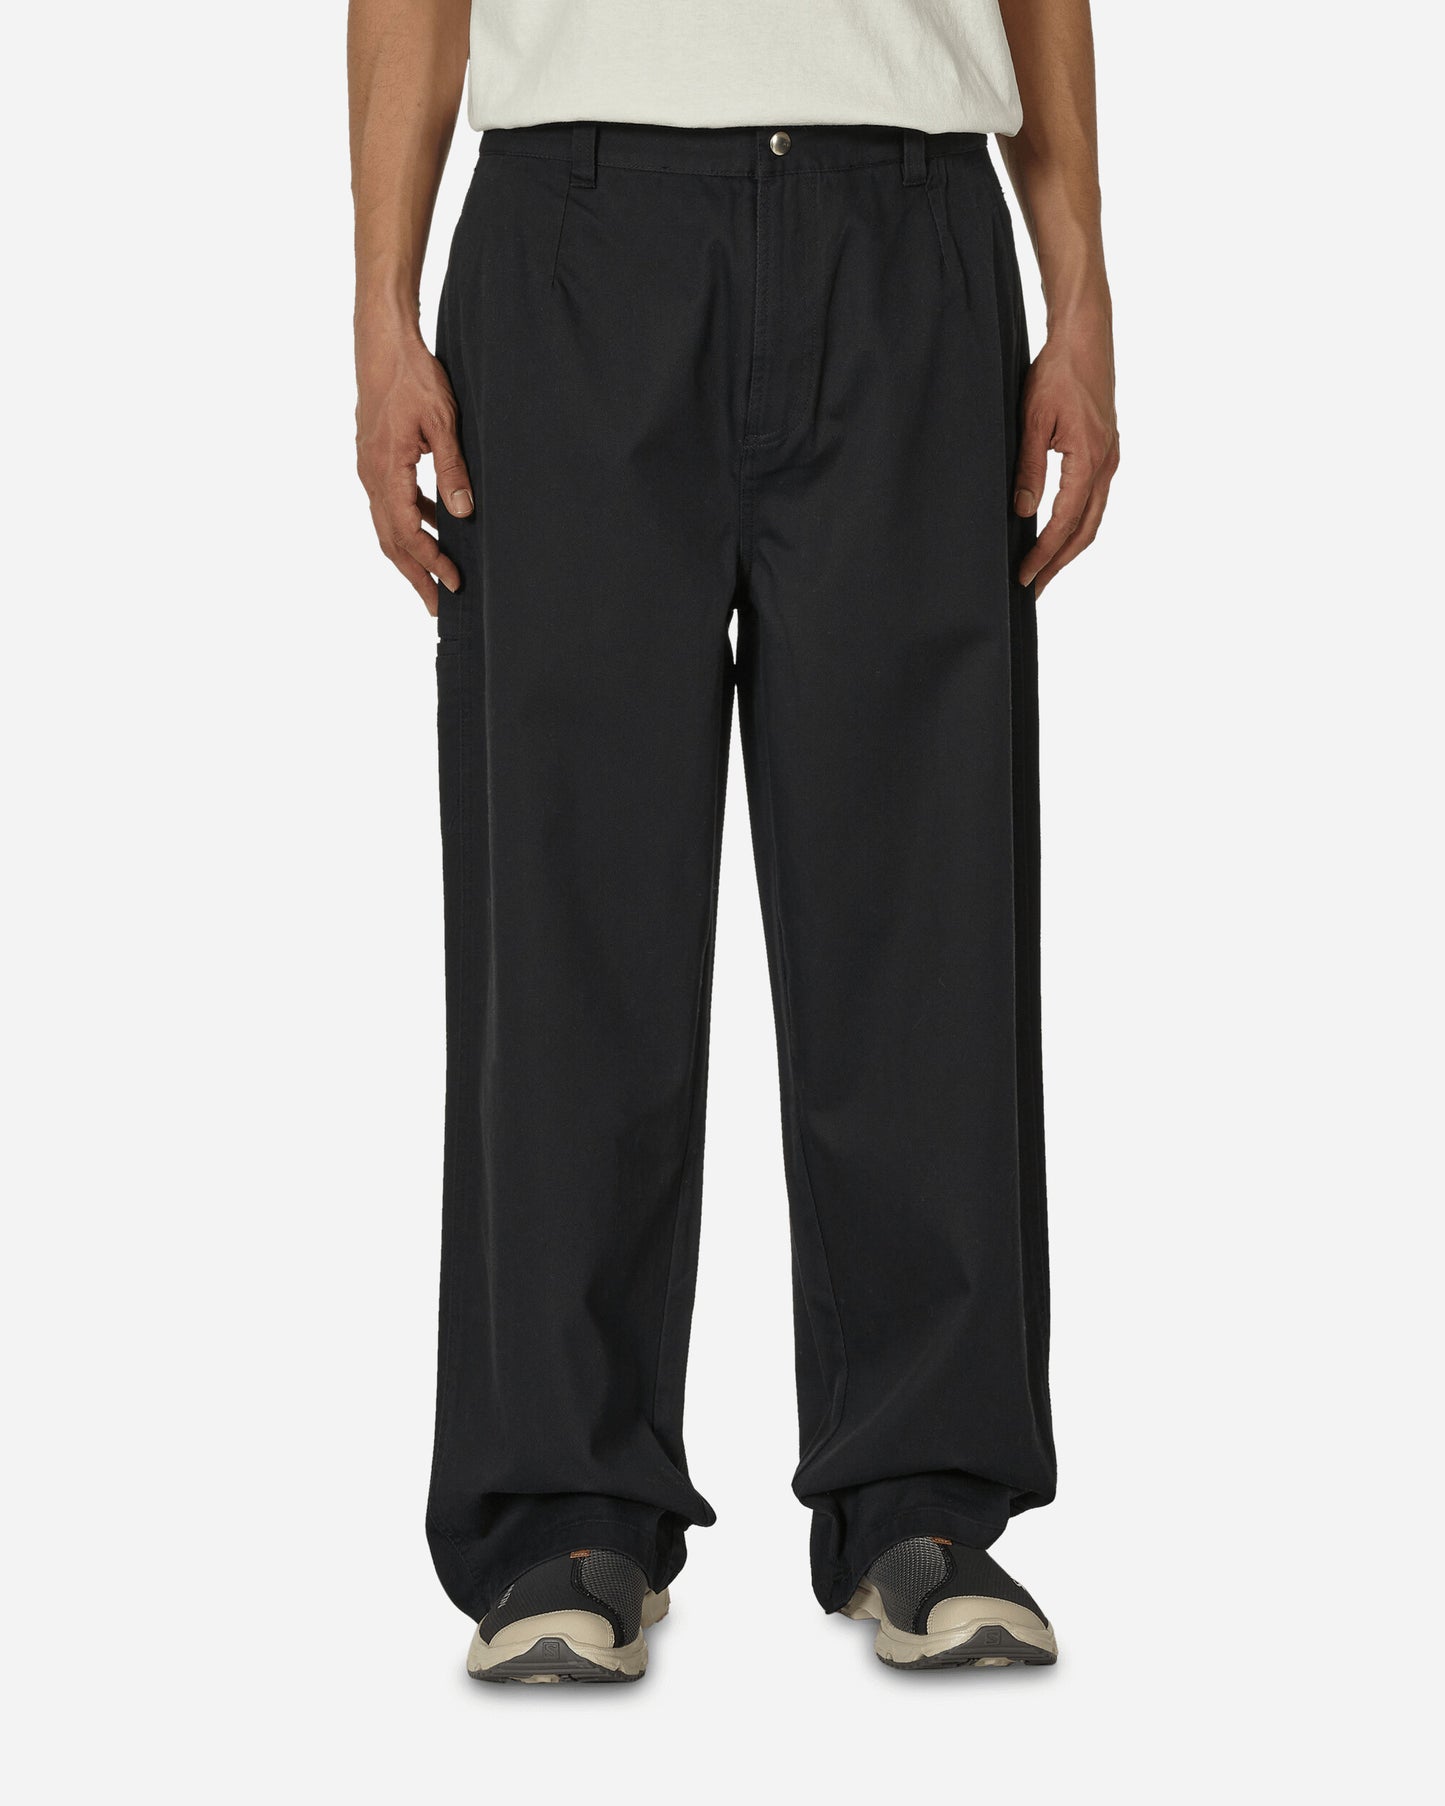 Stüssy Workgear Trouser Twill Black Pants Casual 116625 0001